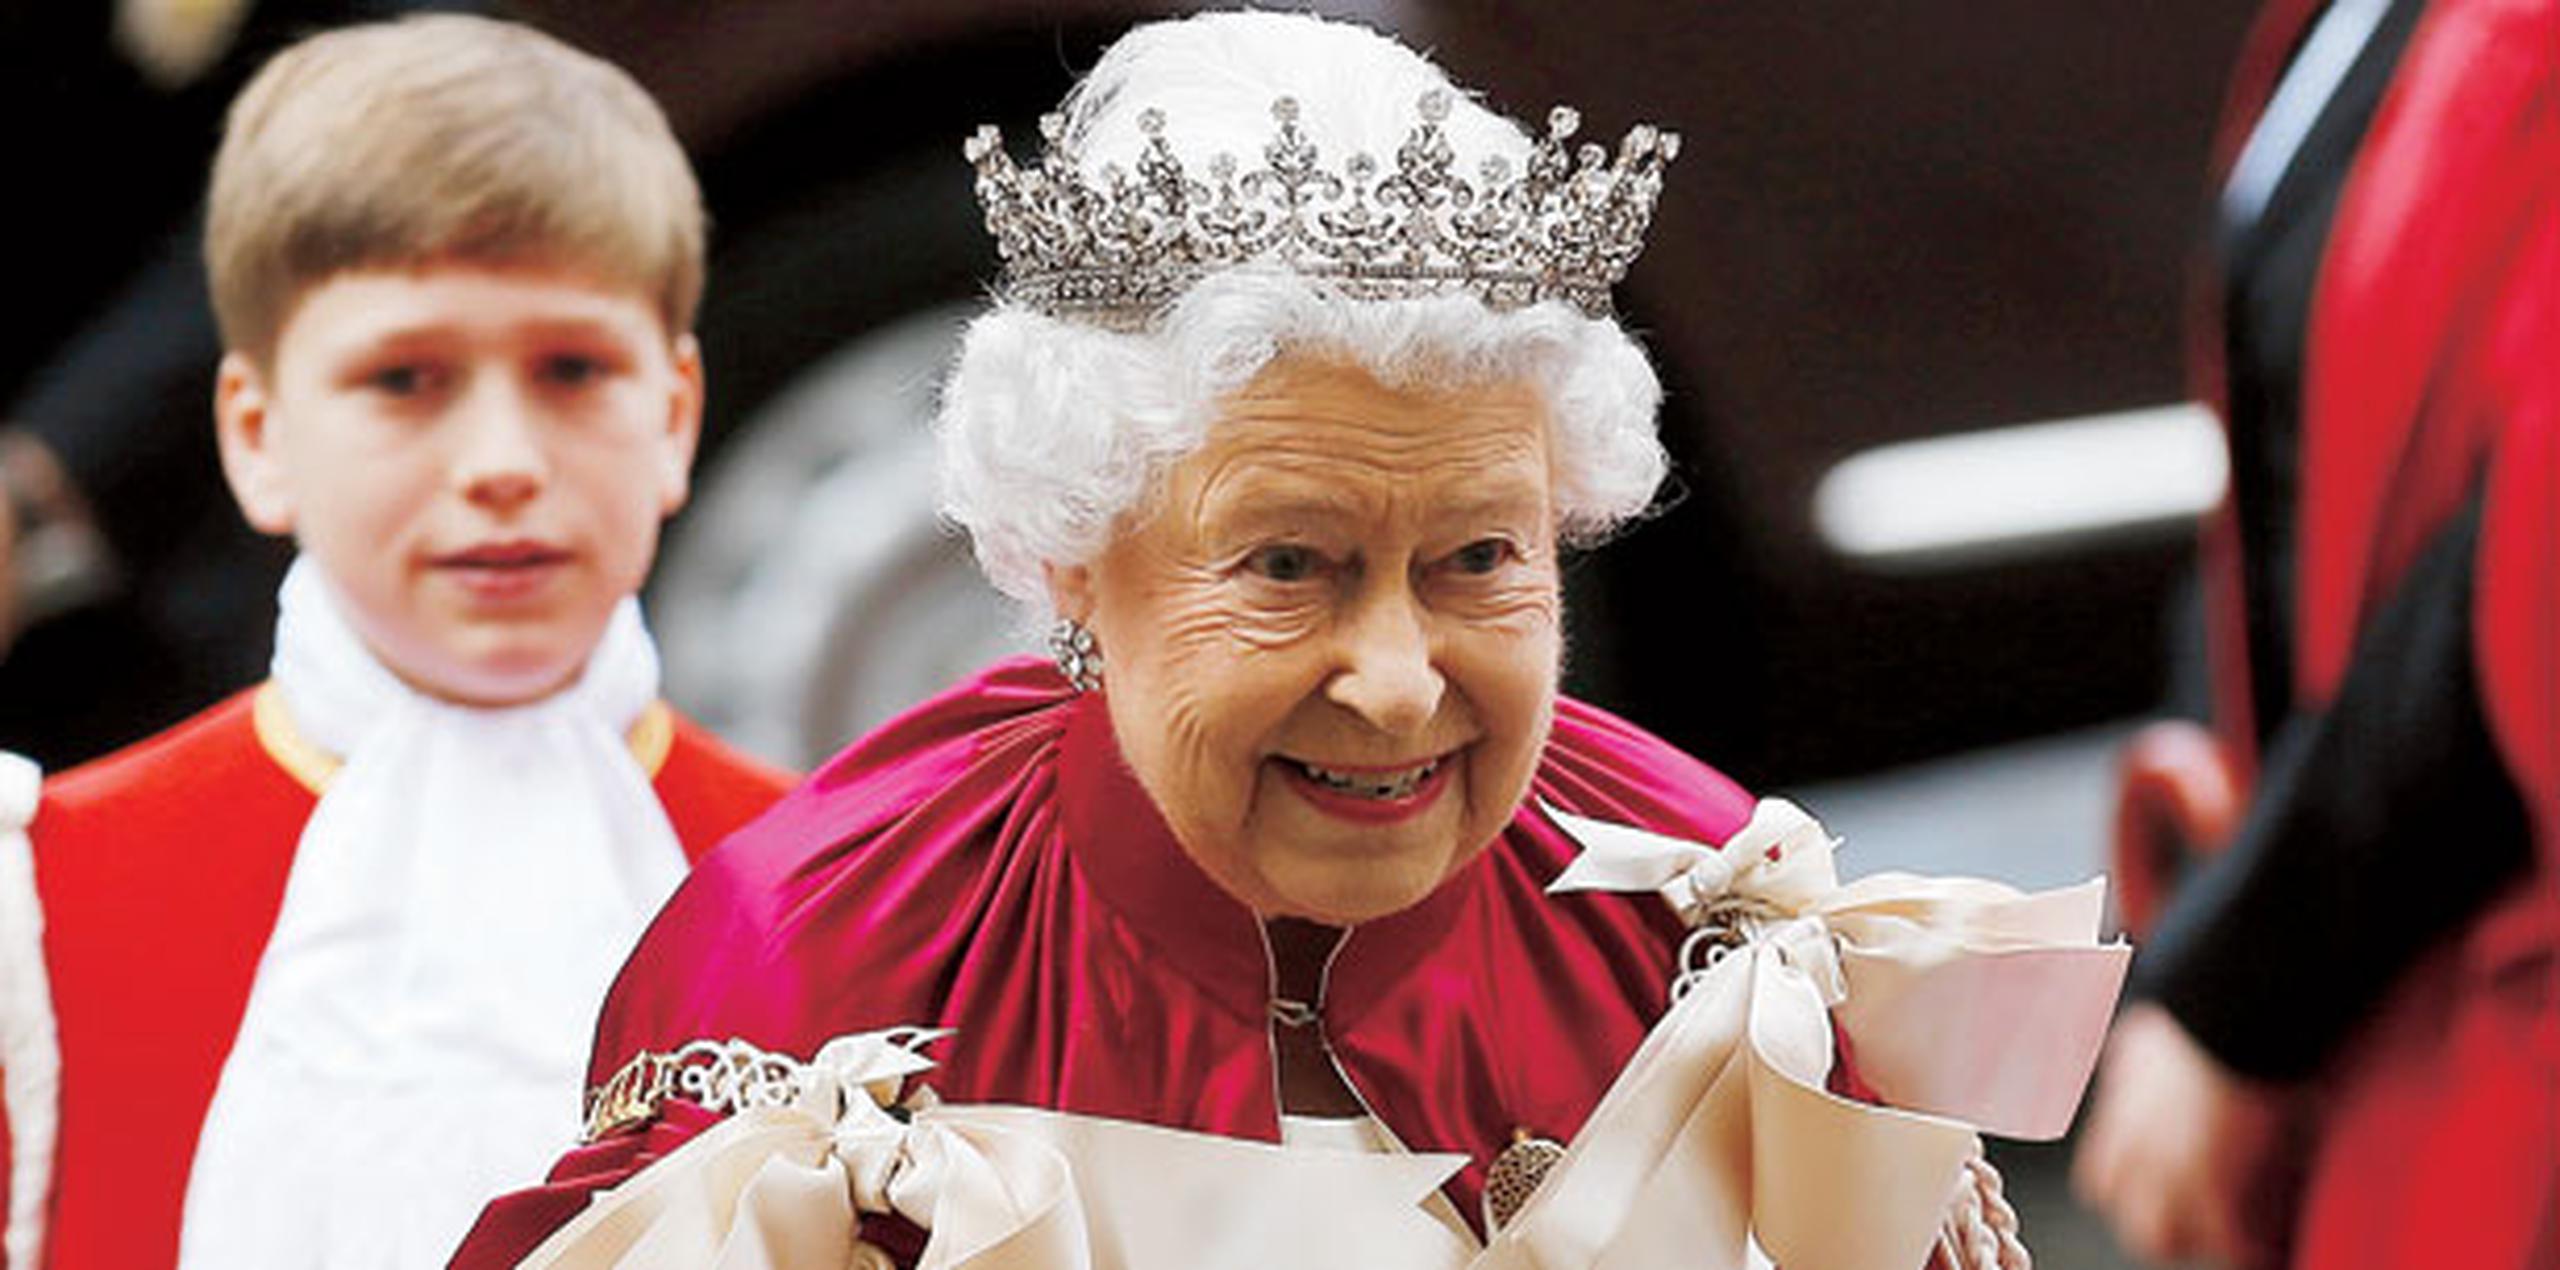 La reina Isabel II -que el próximo 21 de abril cumple 90 años-, por tradición escribe personalmente una felicitación a todos los británicos que celebran su cien cumpleaños. (Archivo)